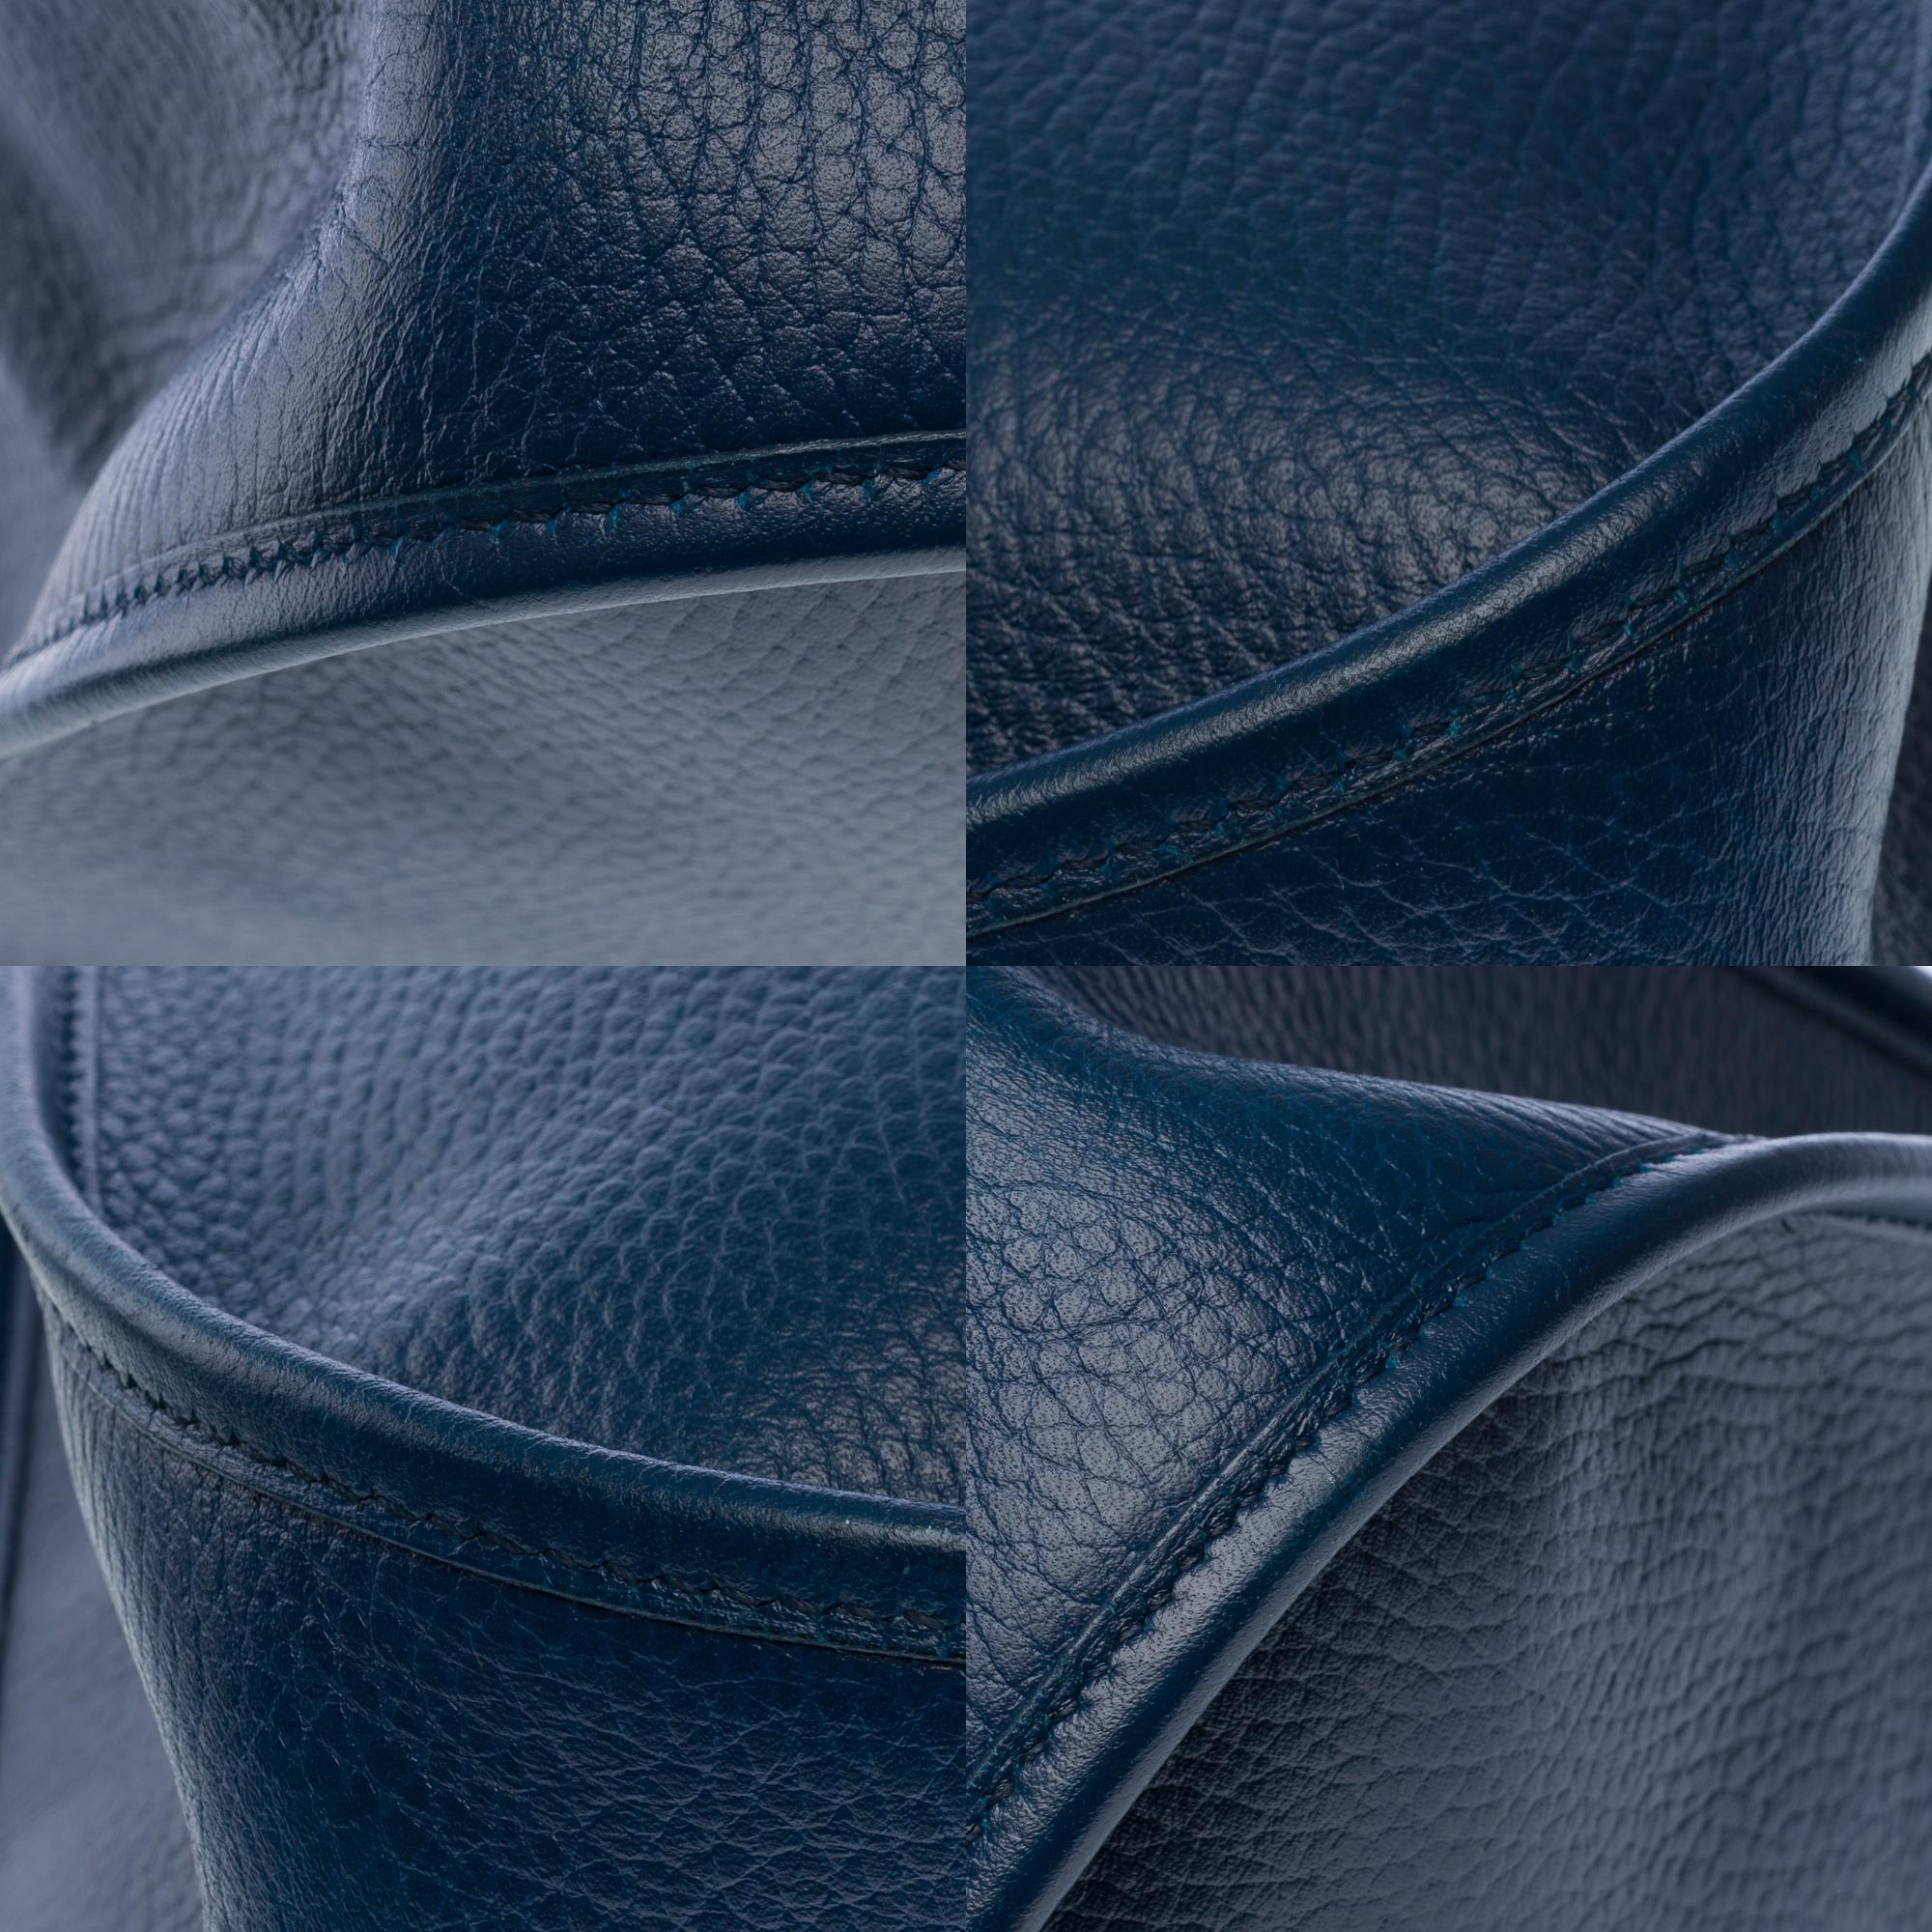 Hermès Evelyne GM  shoulder bag in Navy Blue Taurillon Clemence leather, GHW 8